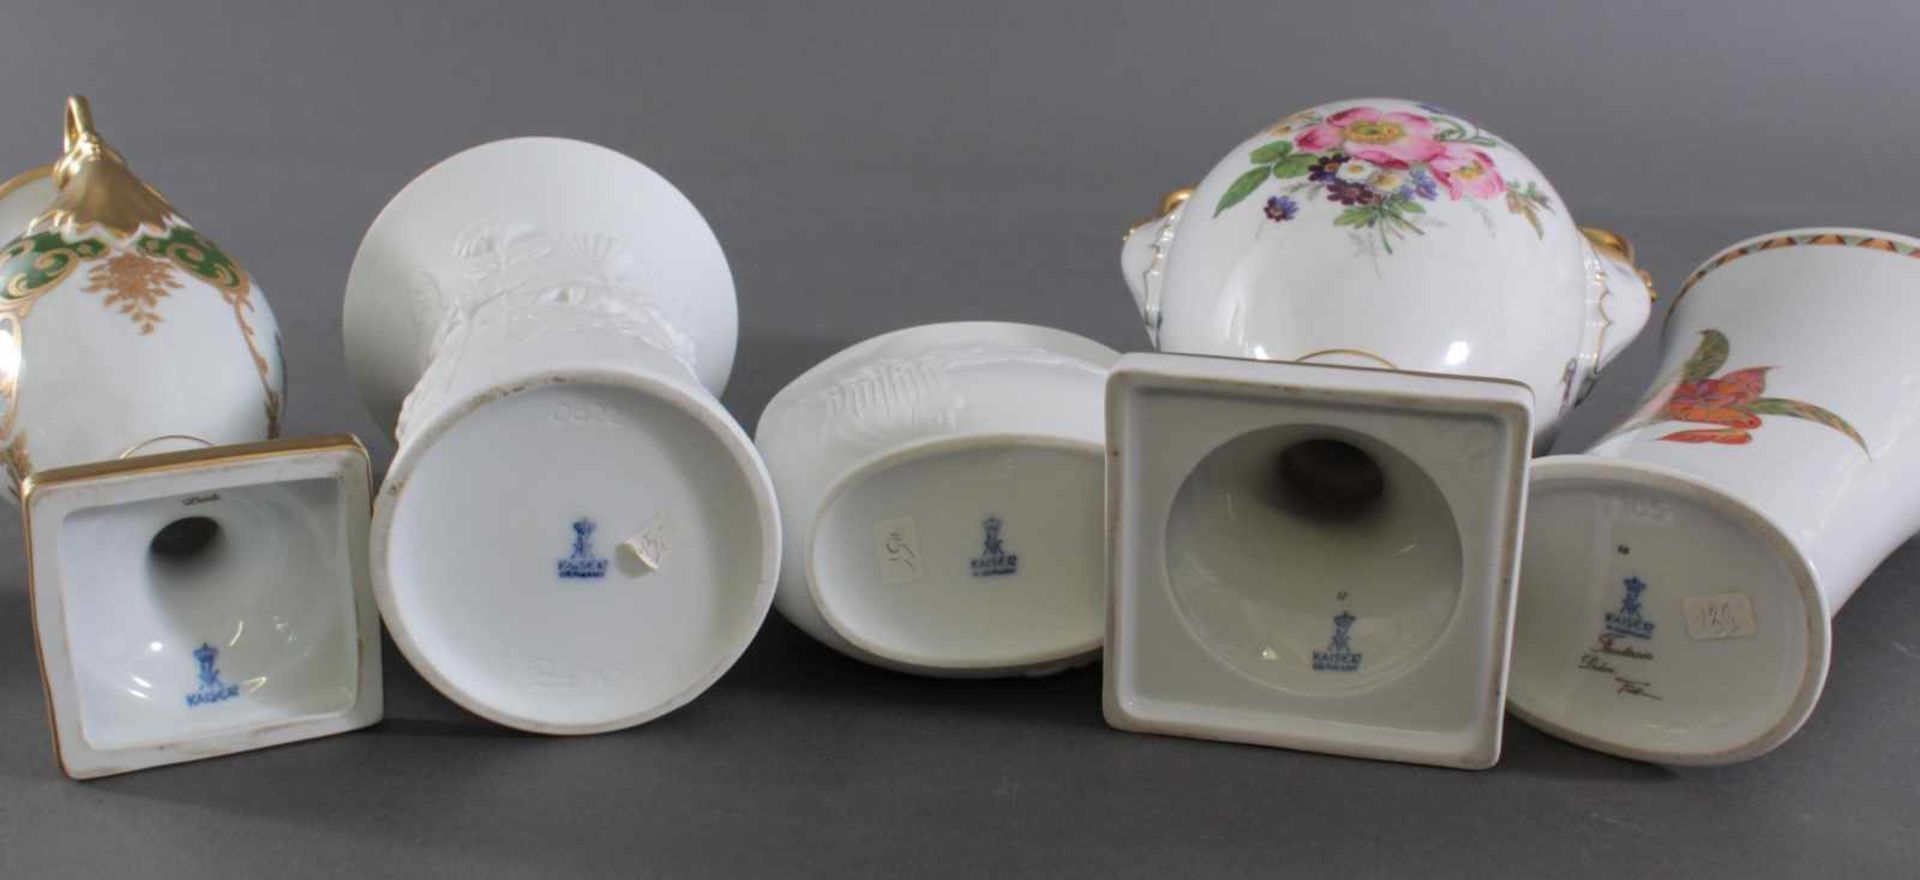 Fünf Vasen, Alboth & Kaiser PorzellanPorzellan, 2x Schwanenhenkelvase, Vorder- und Rückseite - Image 3 of 3